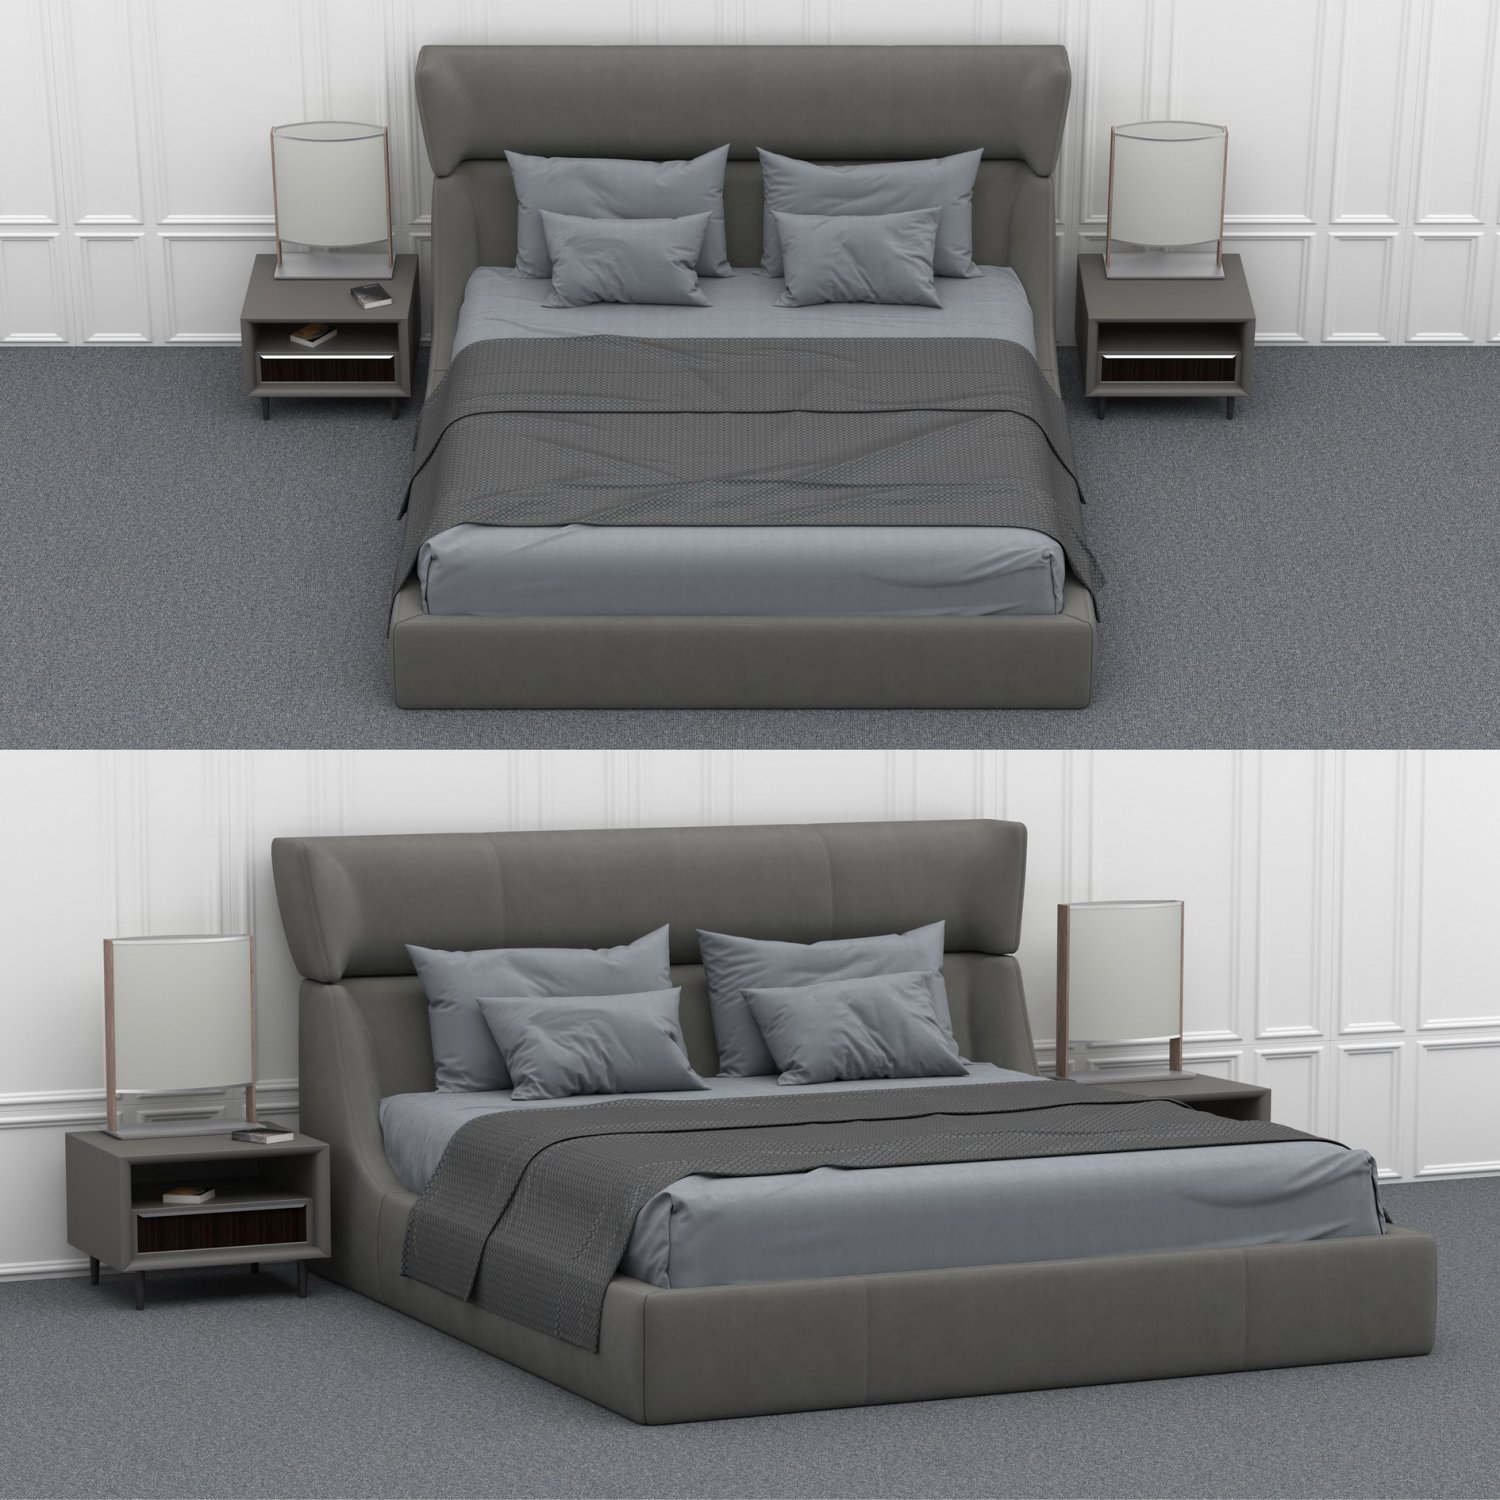 3d models bed. Кровать с 3 мя телками. Marriott Bed models for 3d.